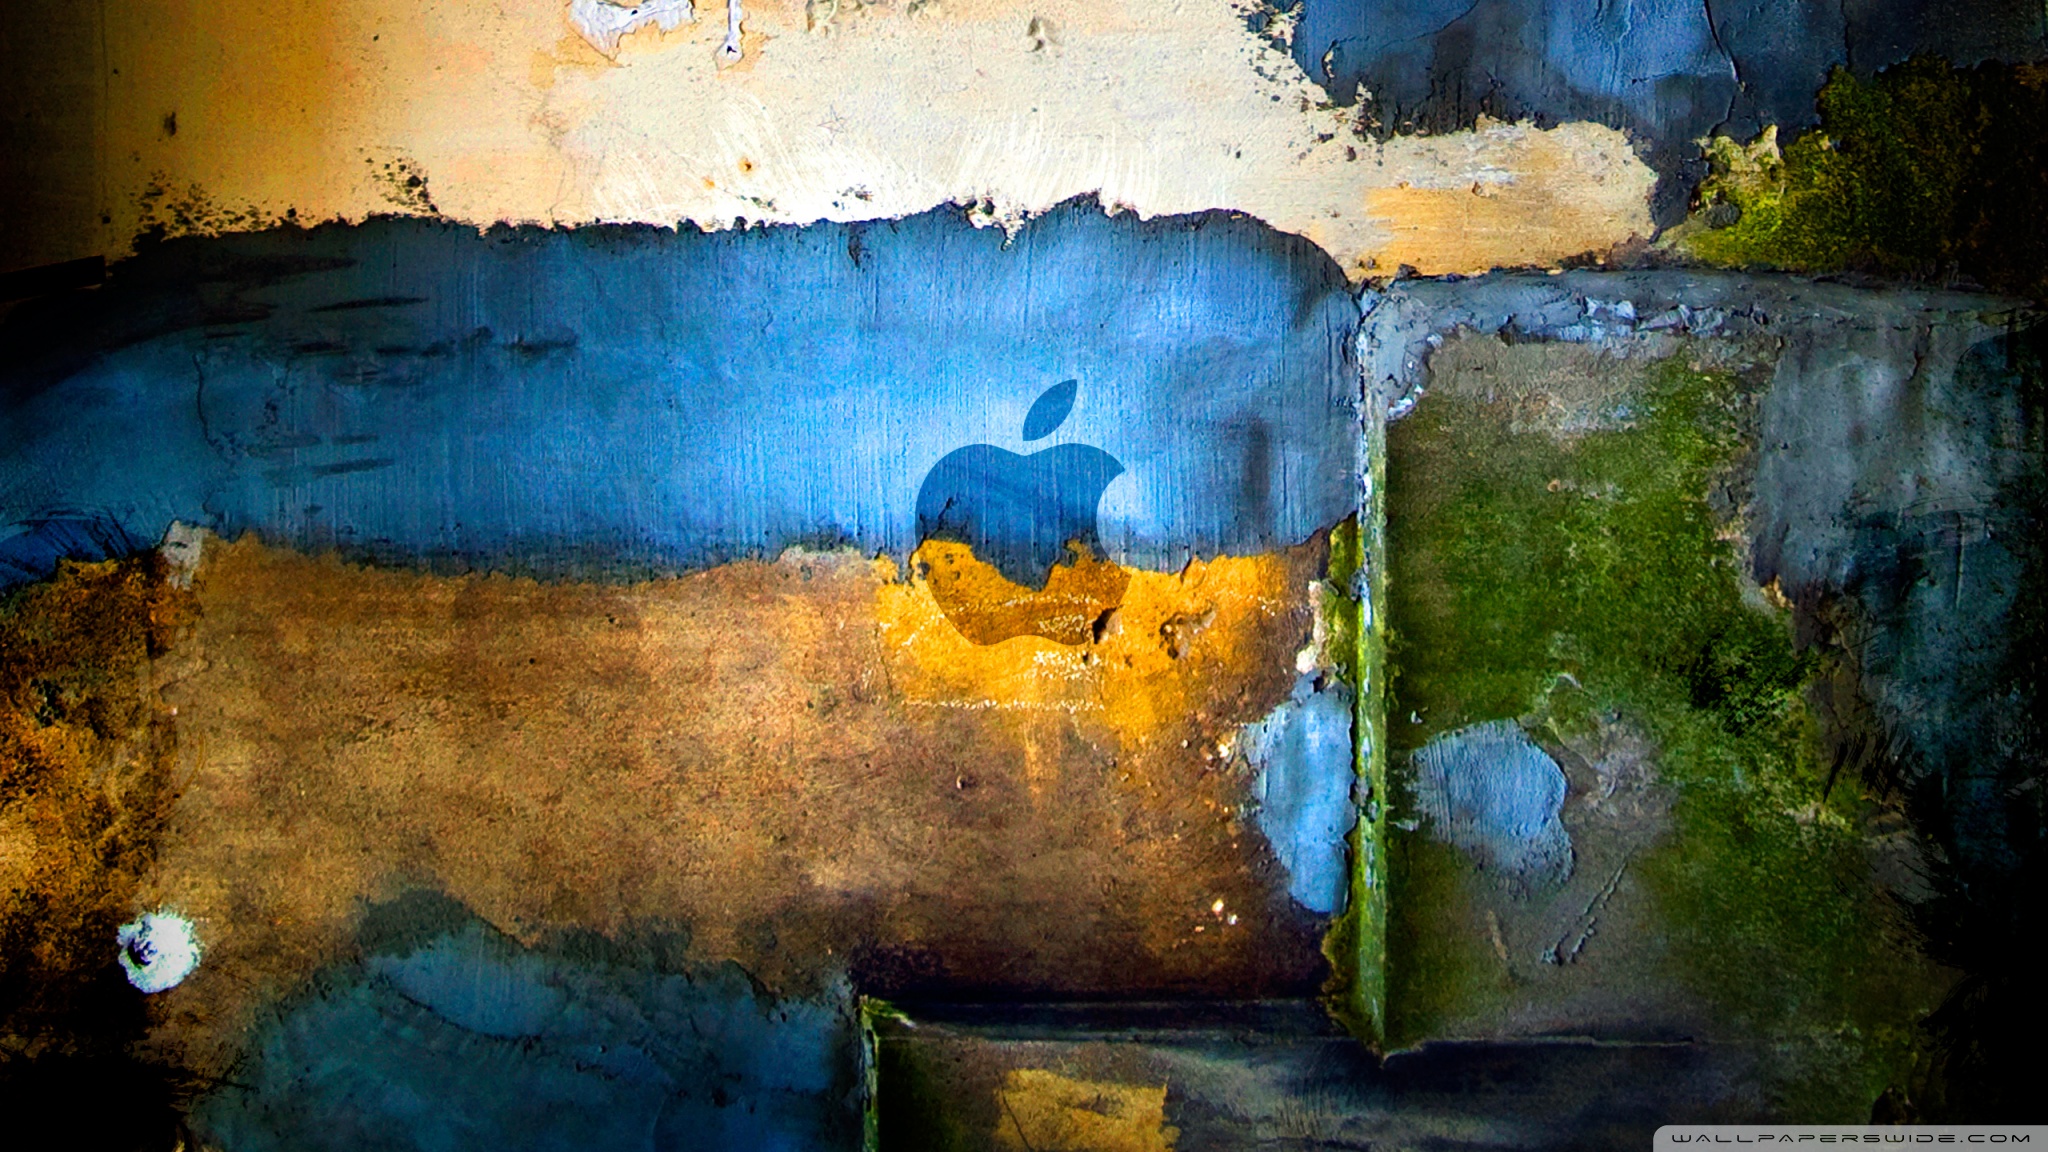 Apple Graffiti desktop wallpaper : Widescreen : High Definition : Mobile